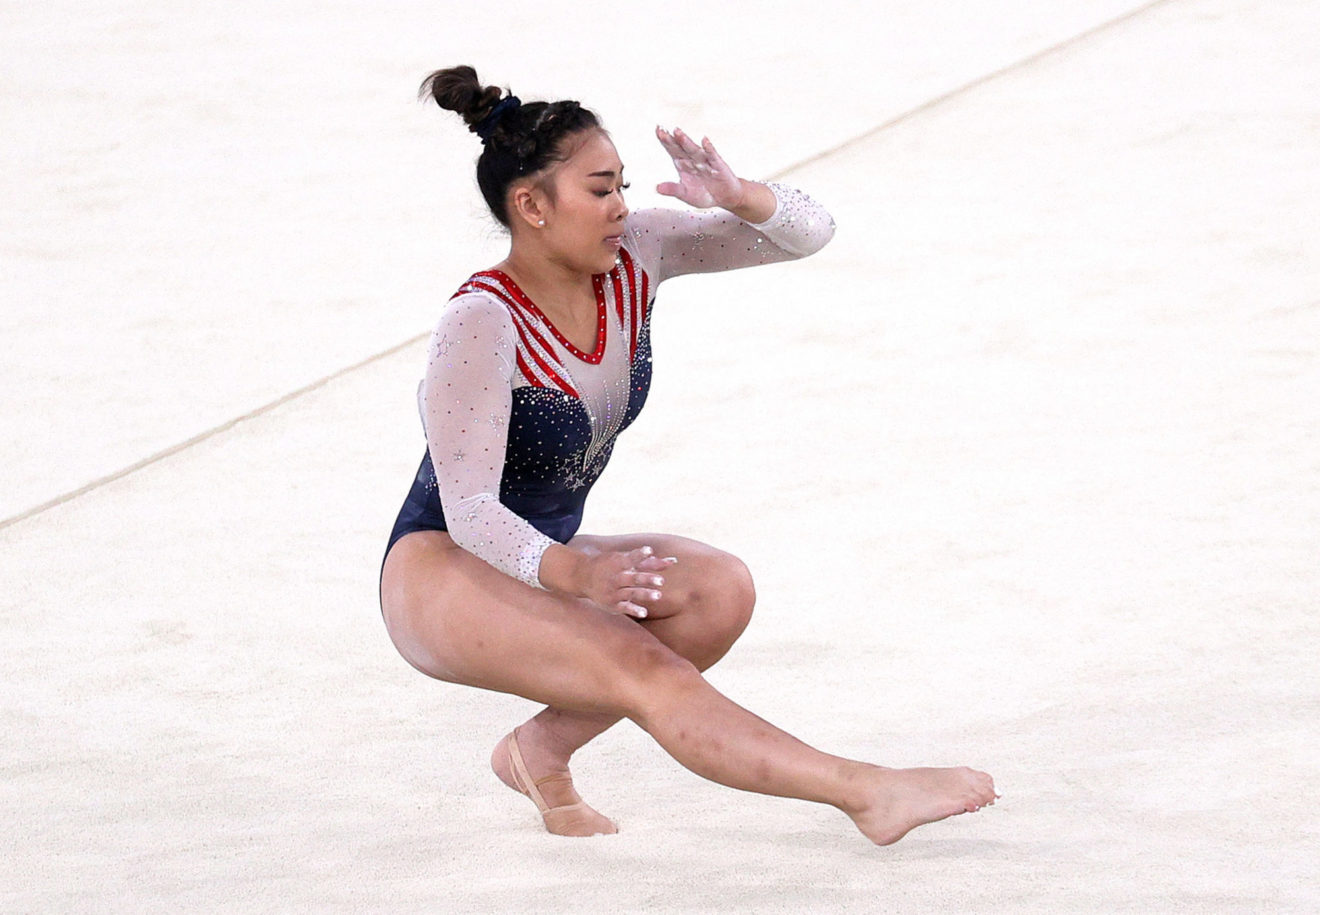 Gymnastique : Sunisa Lee, médaillée d'or aux JO de Tokyo, victime d'une agression raciste